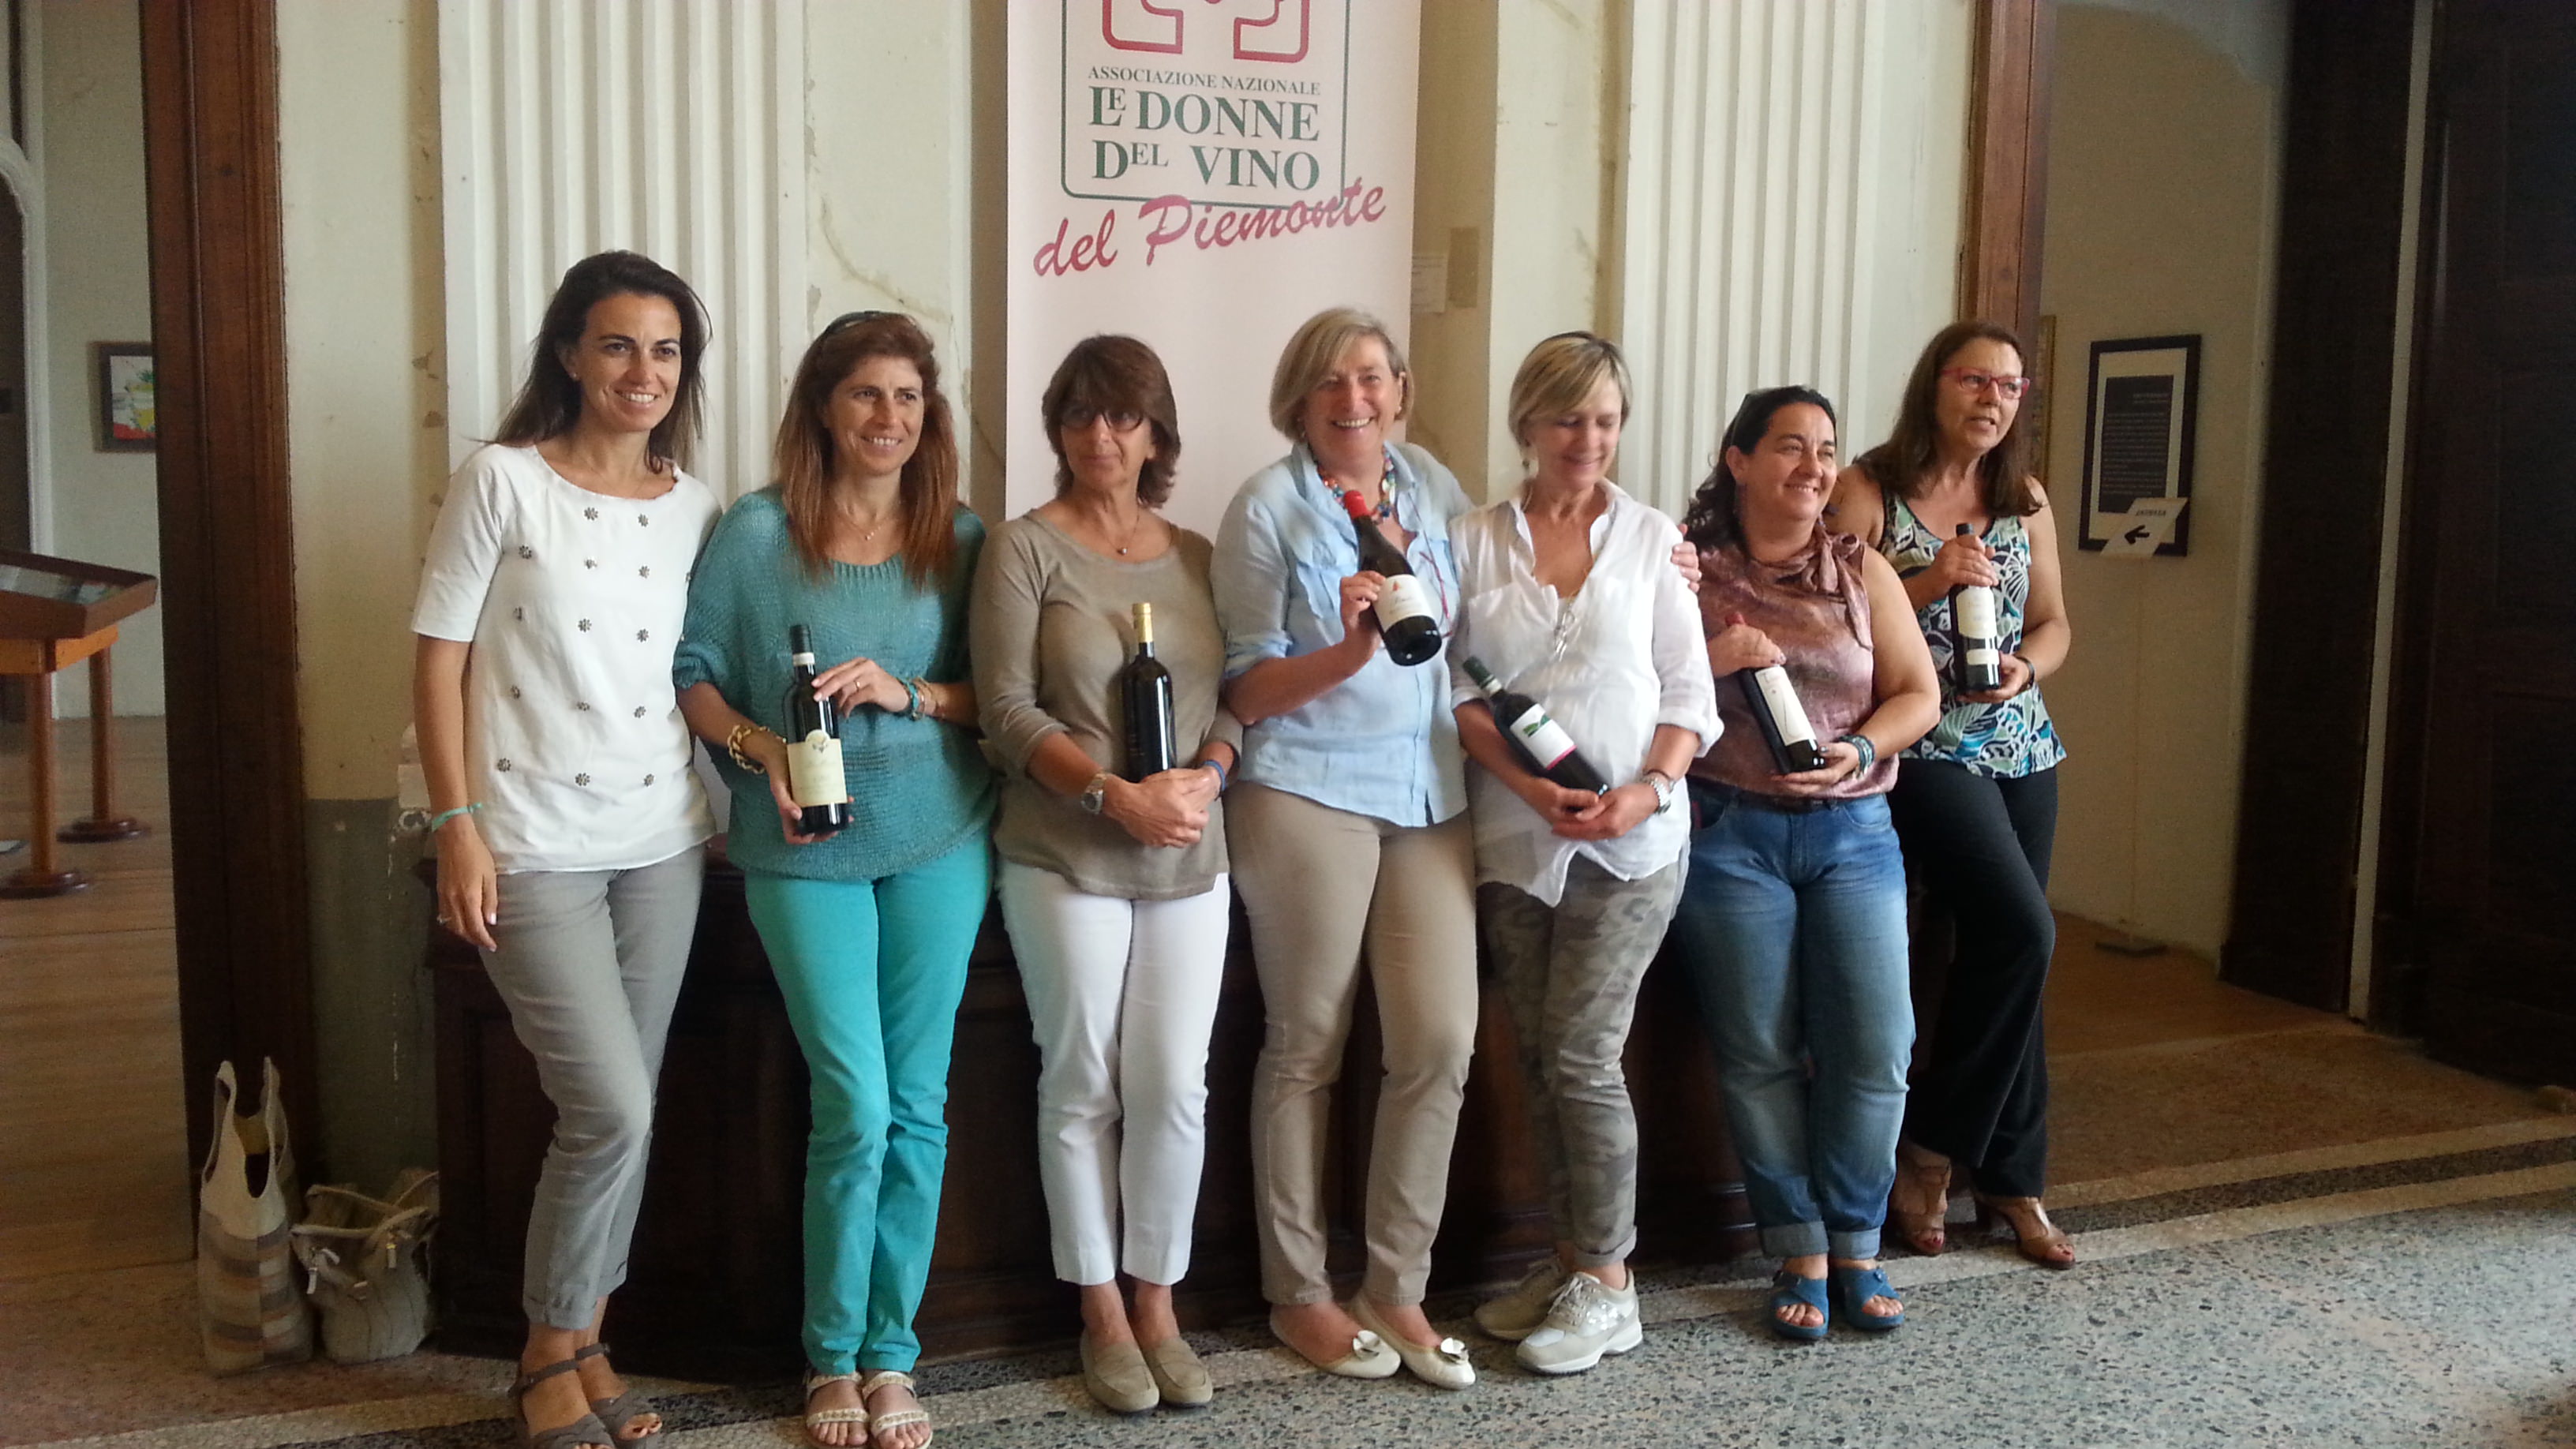 Alcune esponenti dellassociazione Donne del Vino del Piemonte